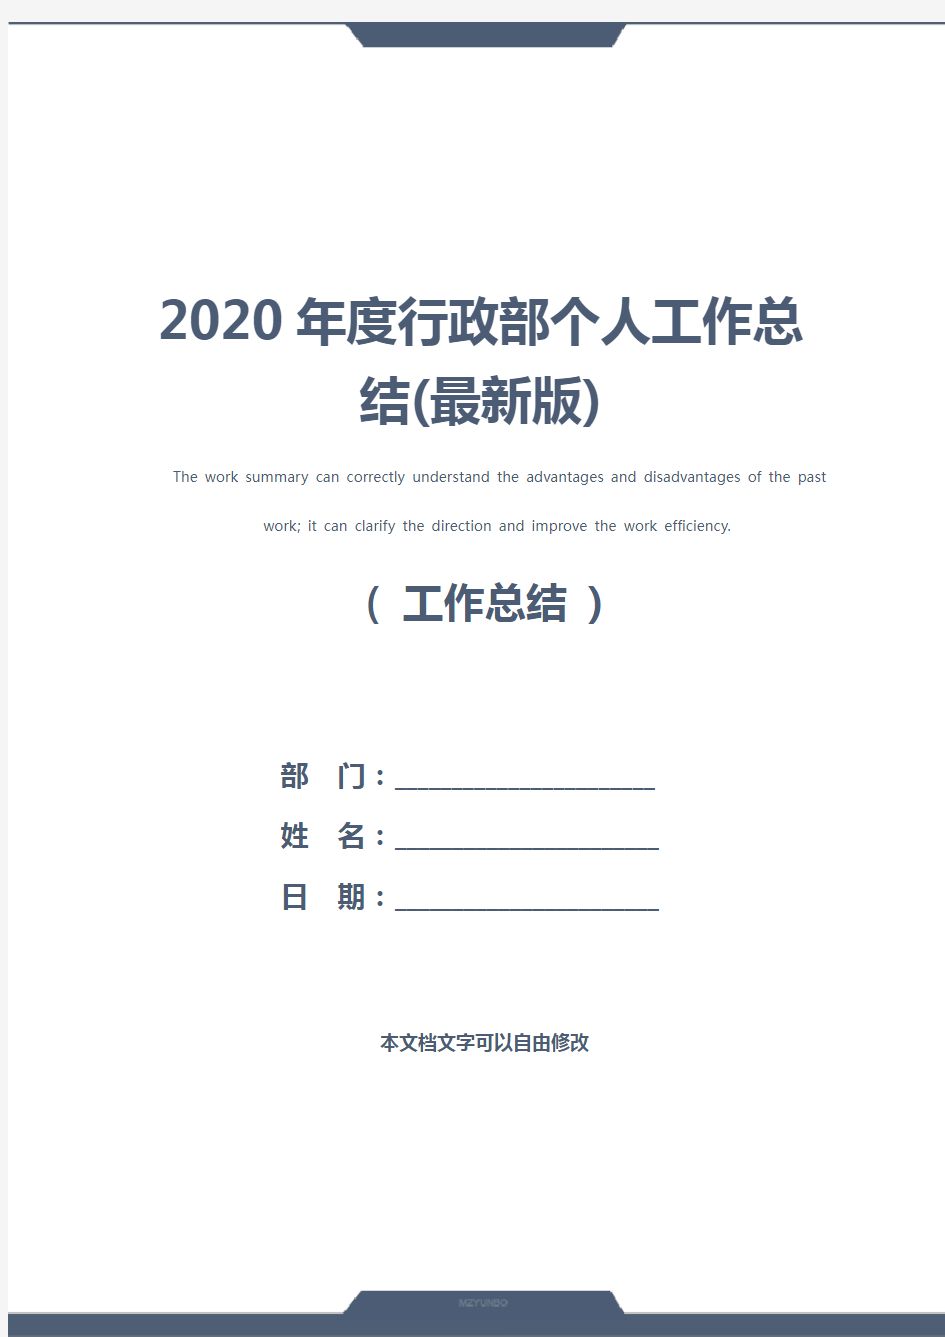 2020年度行政部个人工作总结(最新版)